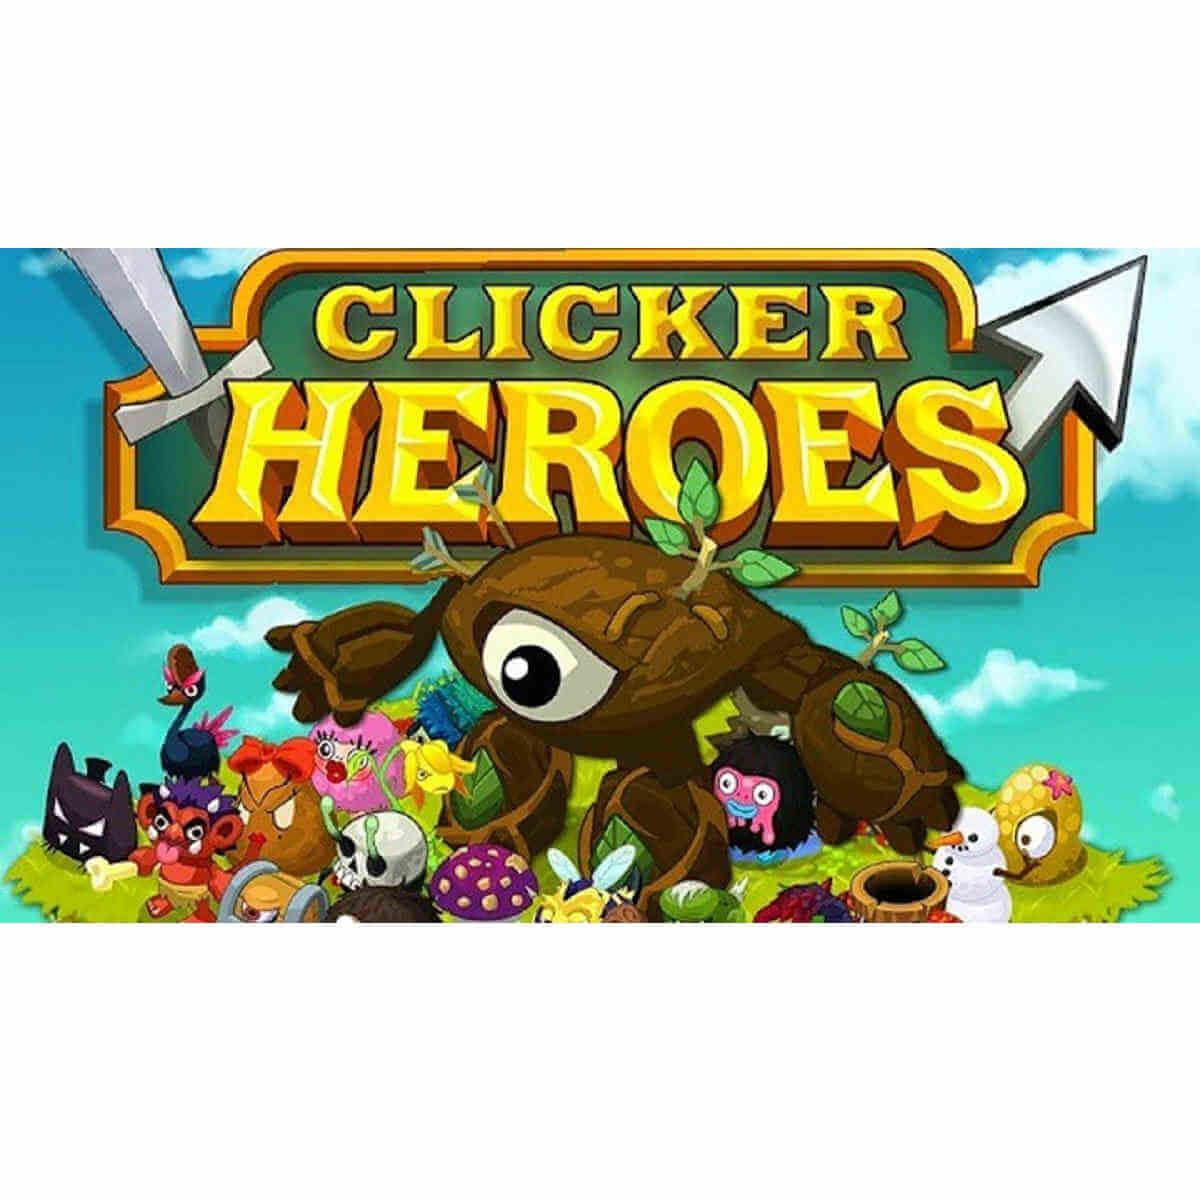 Clicker Heroes no Steam